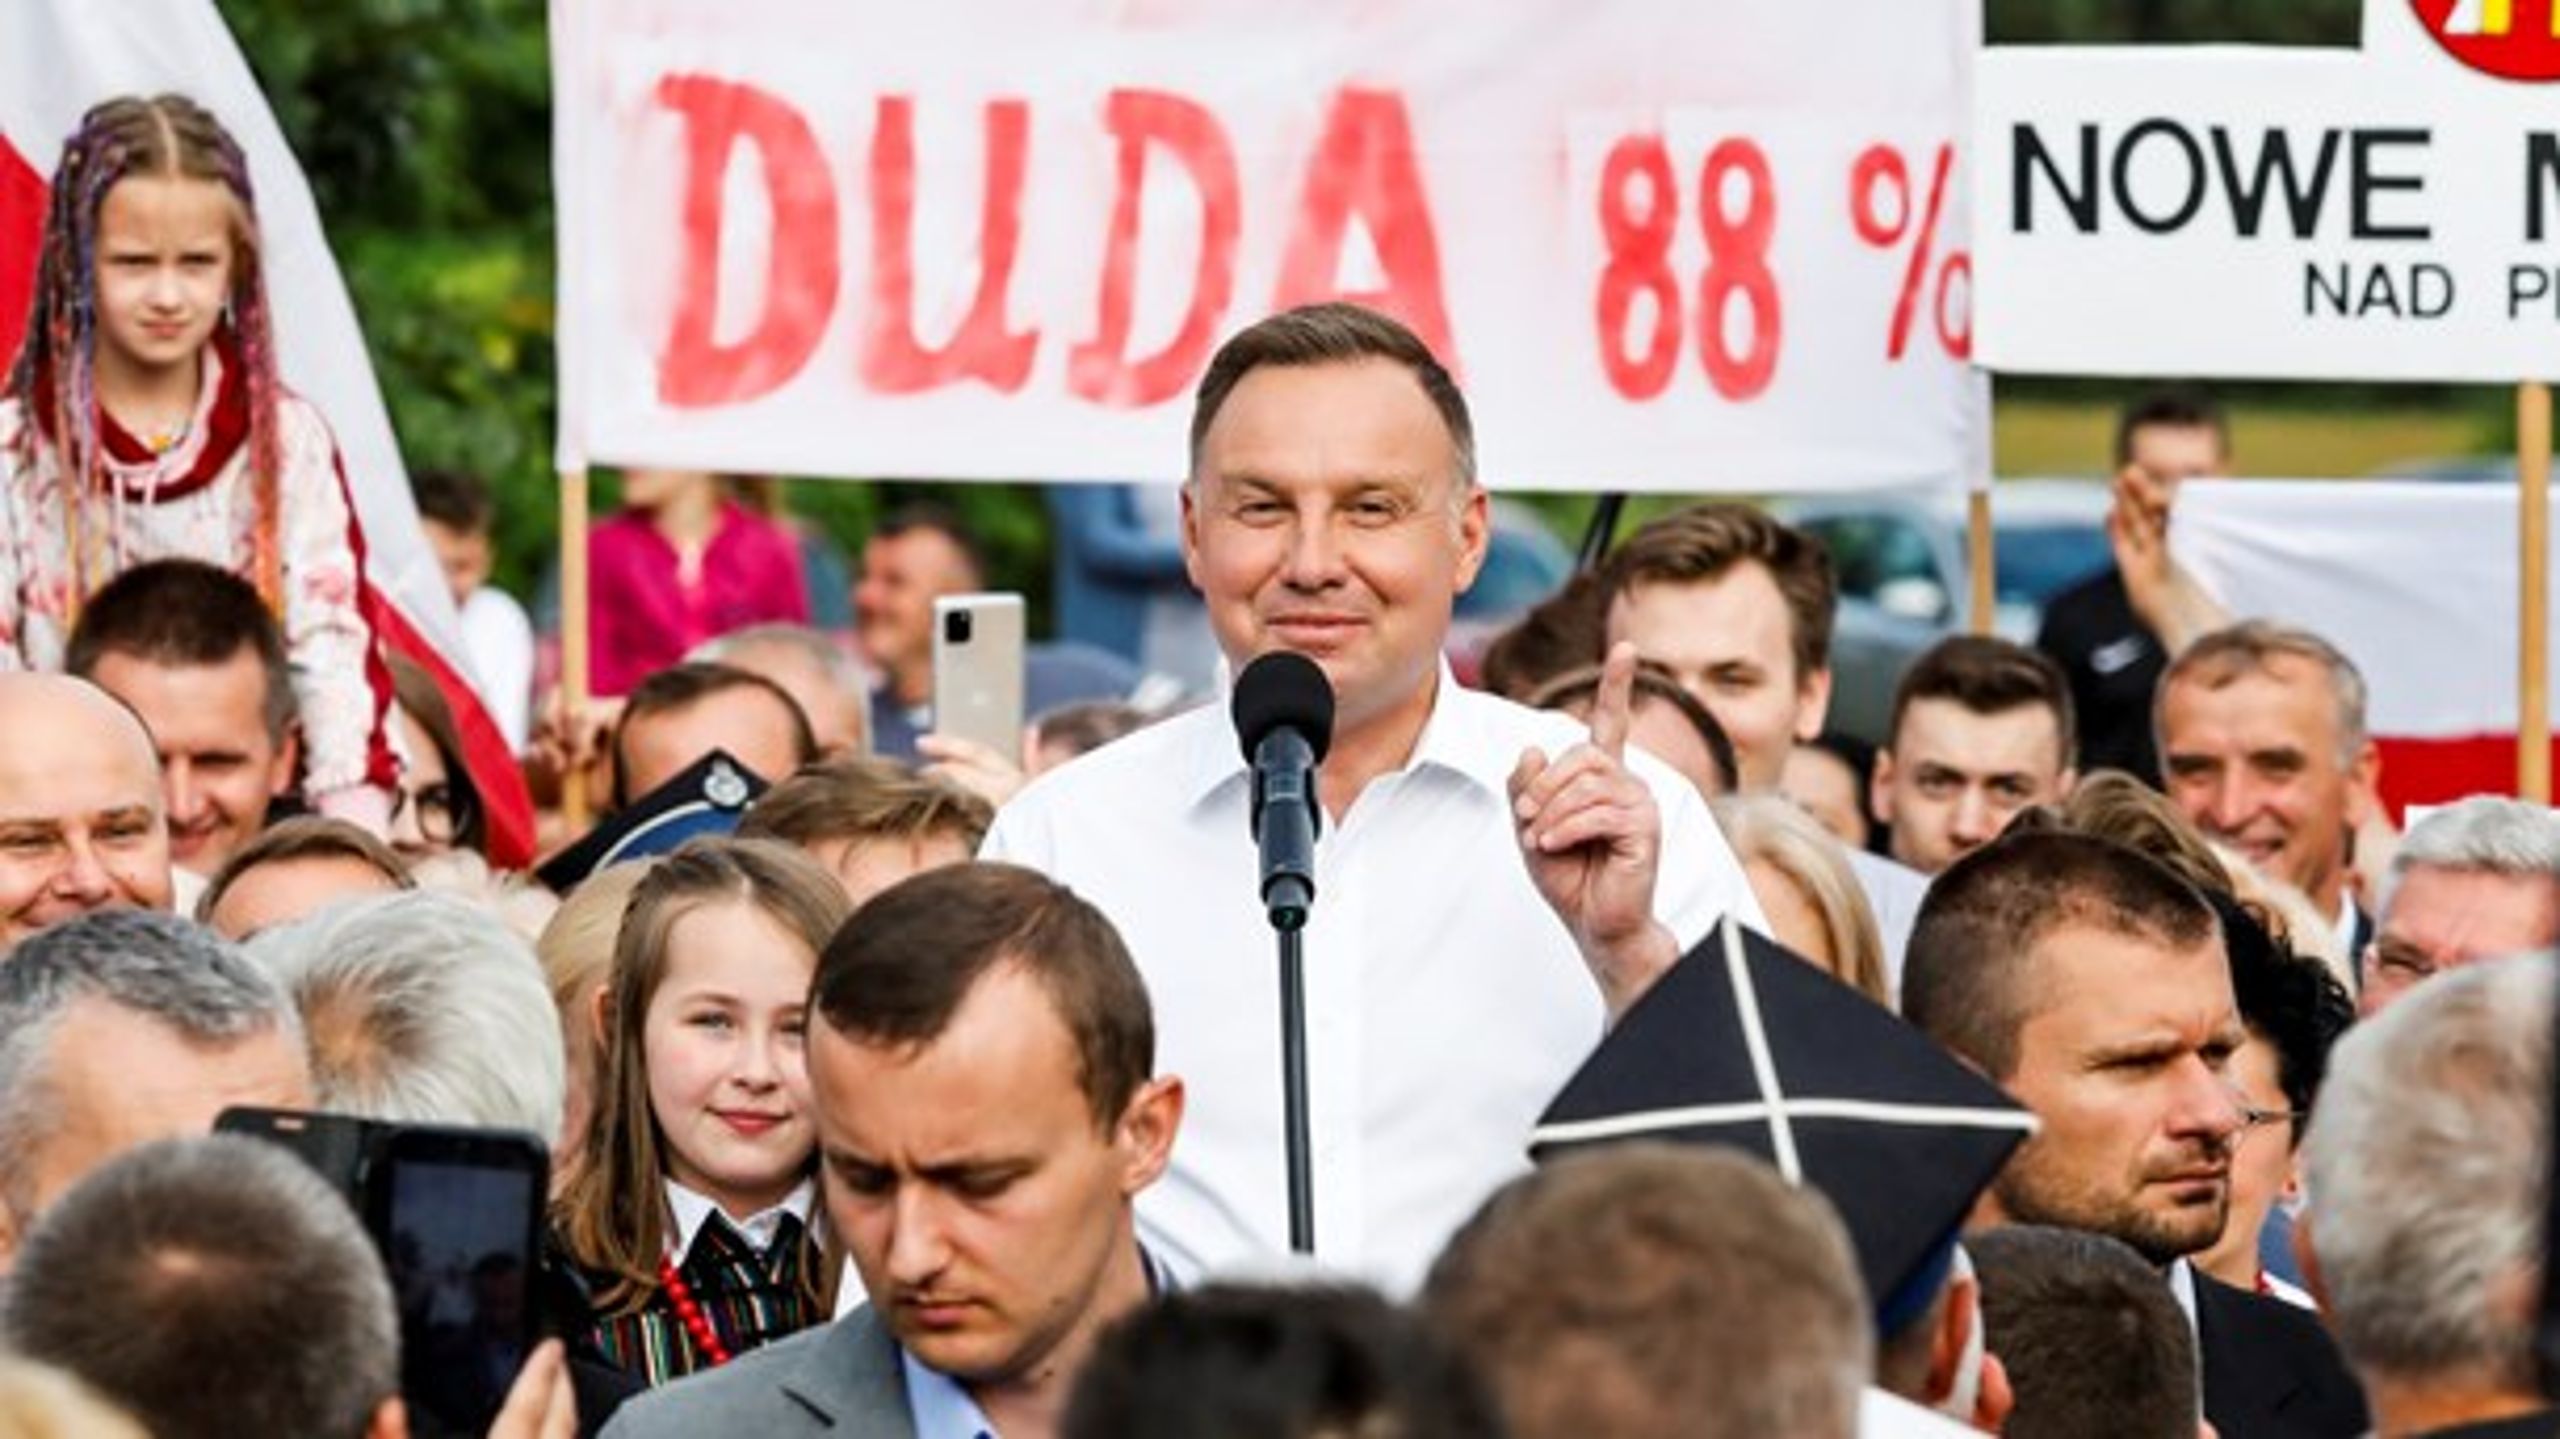 Polens genvalgte præsident, Andrzej Duda, har i sin kampagne kæmpet imod LGBT-personers rettigheder, skriver Mads Hvid.